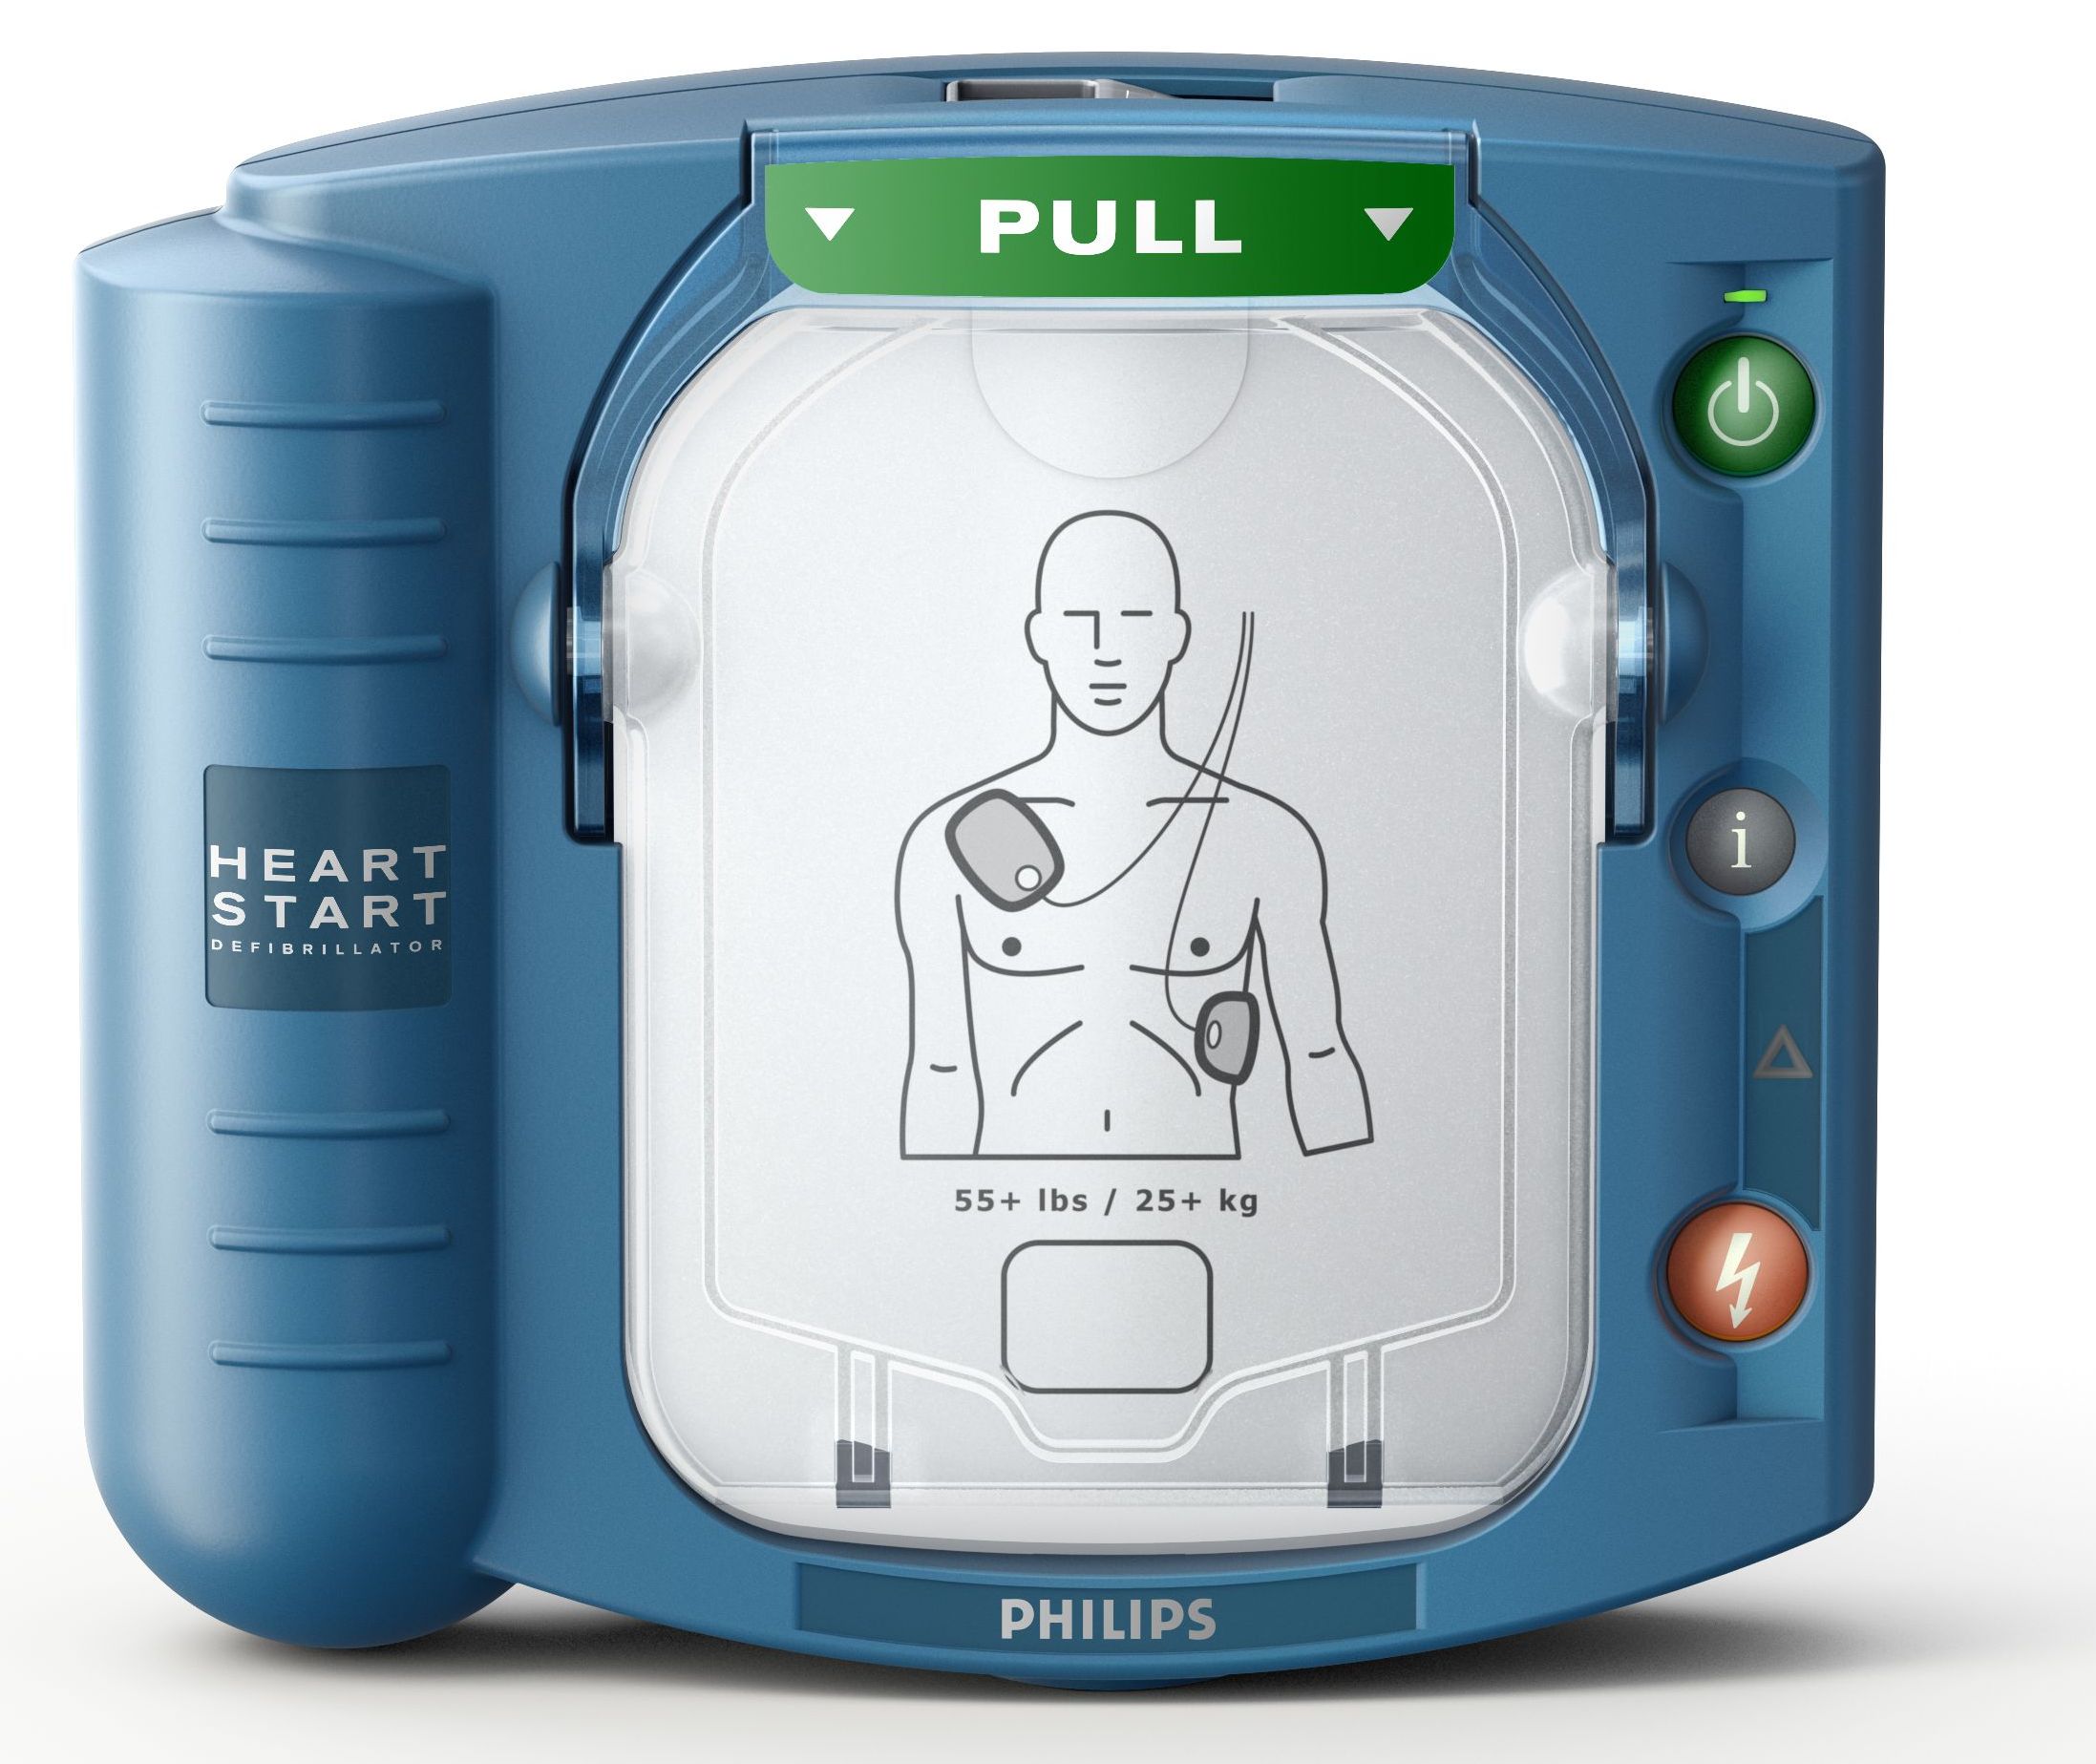 Philips Heart-Start HS1 Defibrillator komplett Set inkl. Einweisung vor Ort